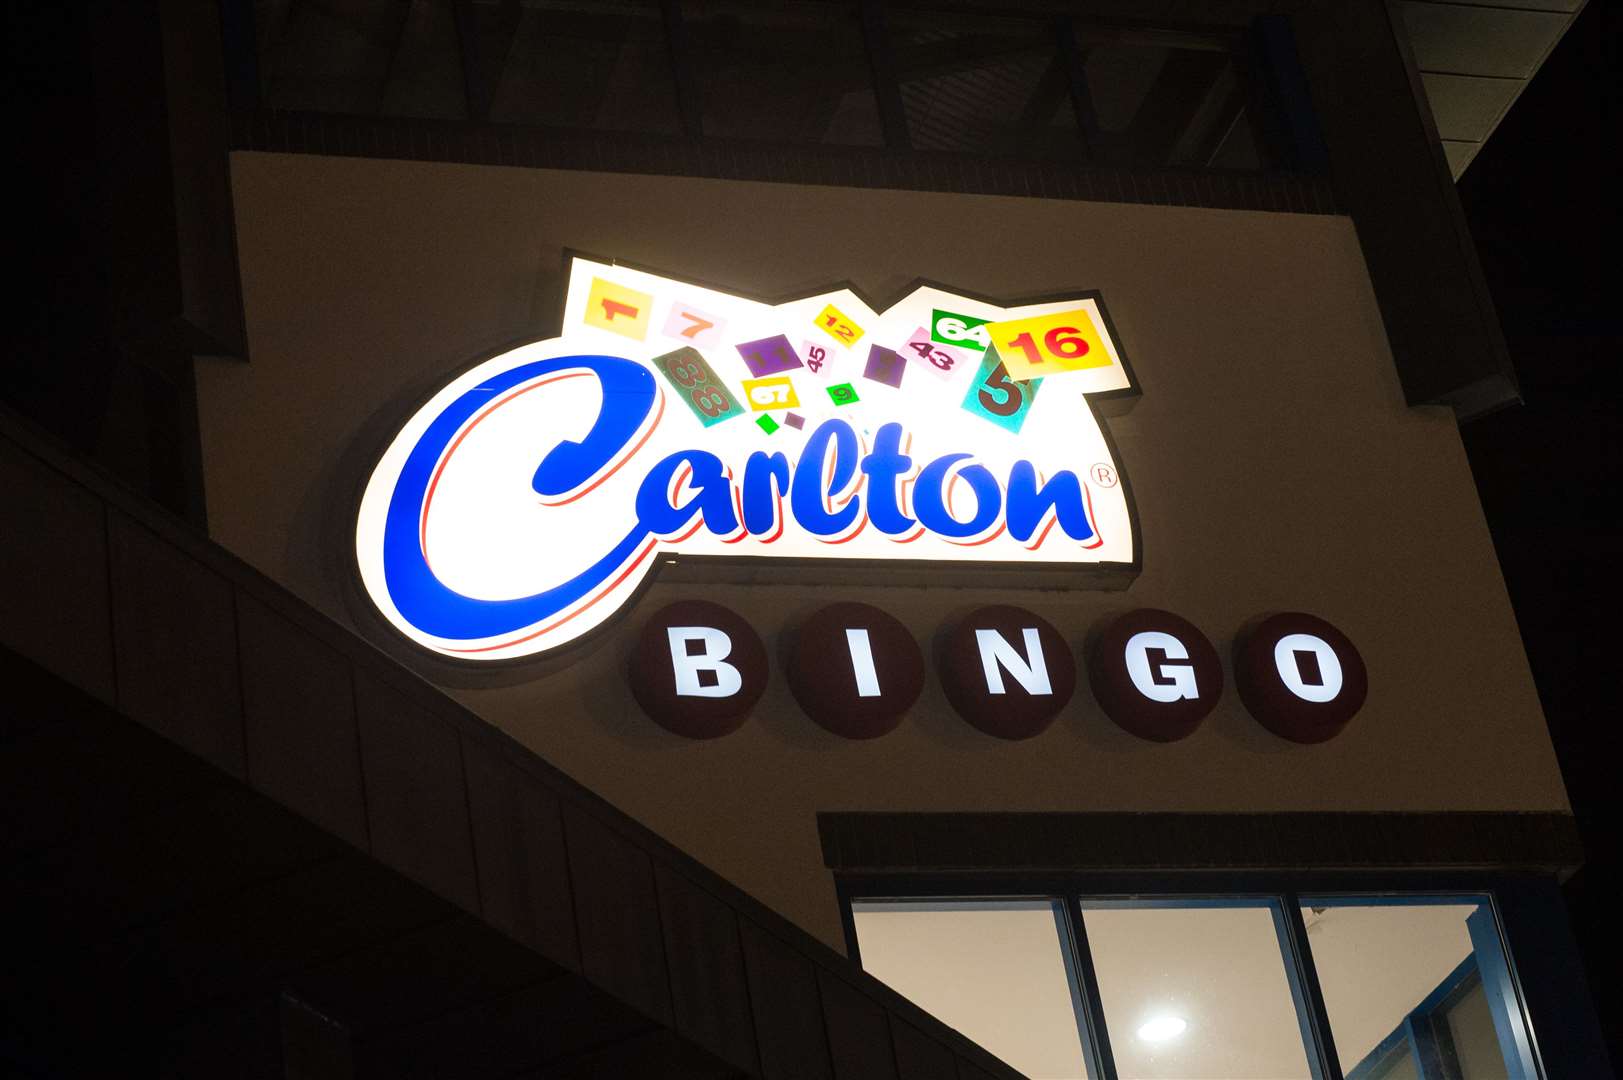 Carlton Bingo in Inverness.